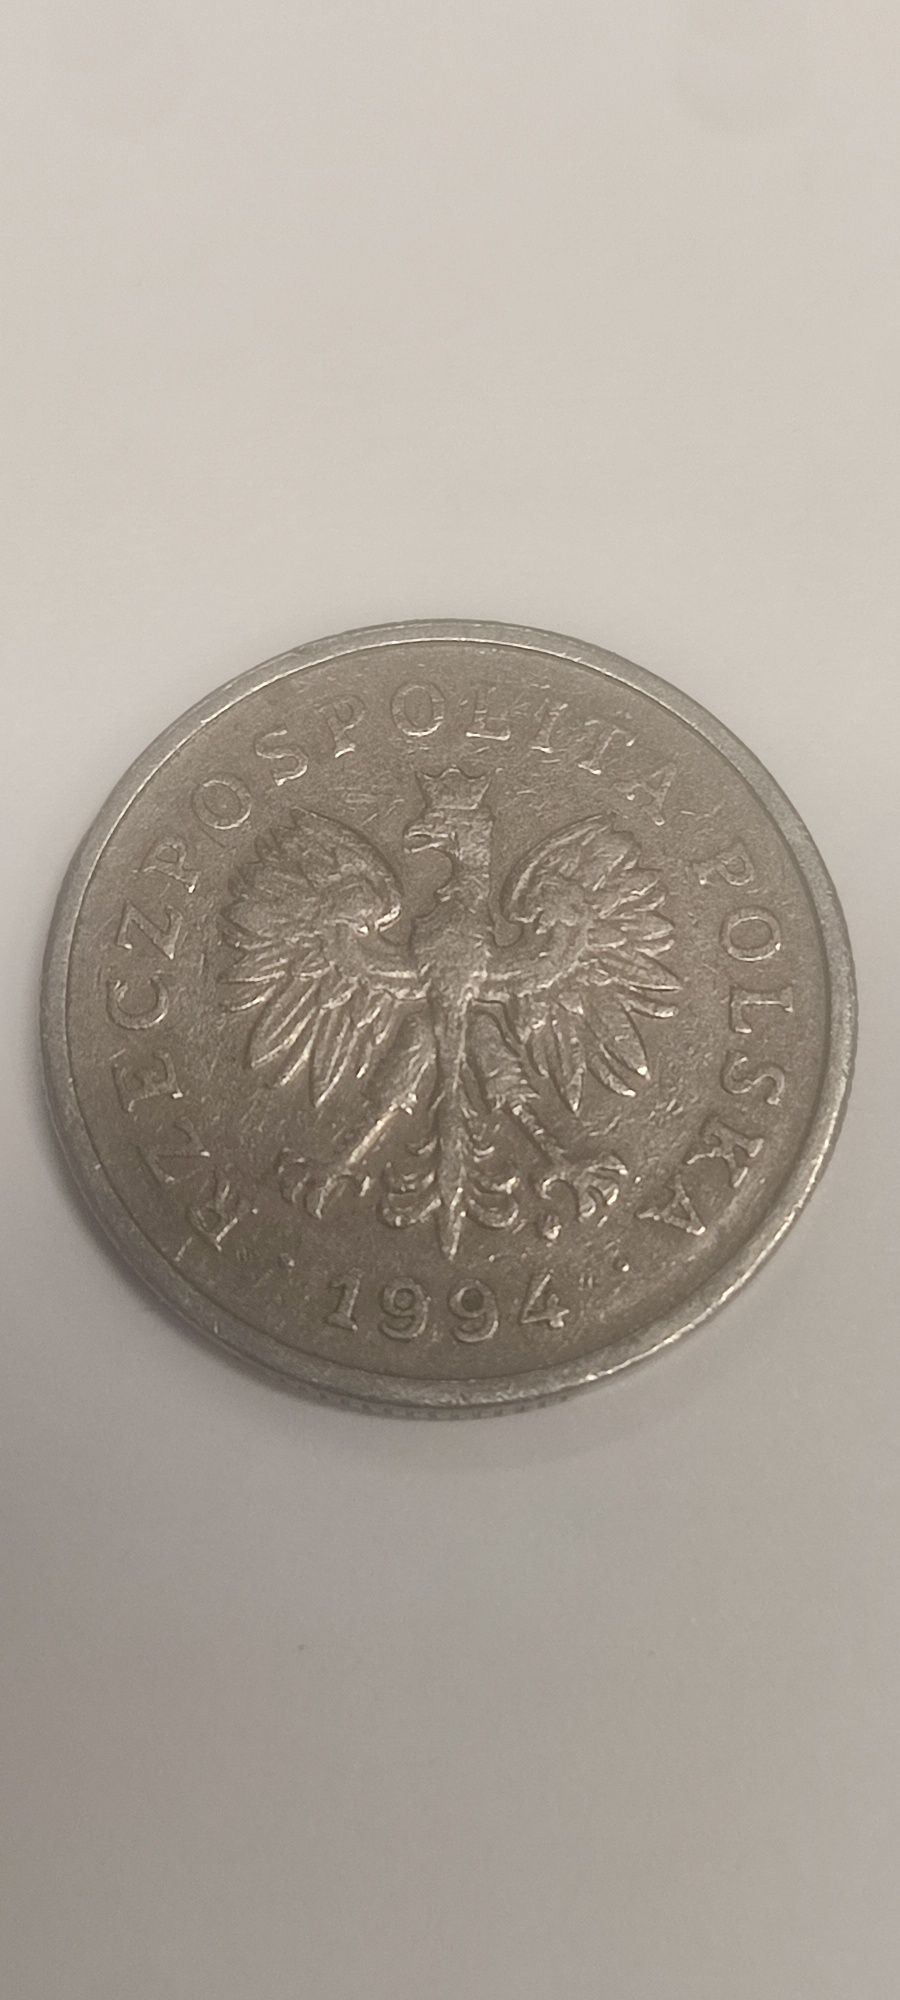 Sprzedam monetę 1zl 1994r